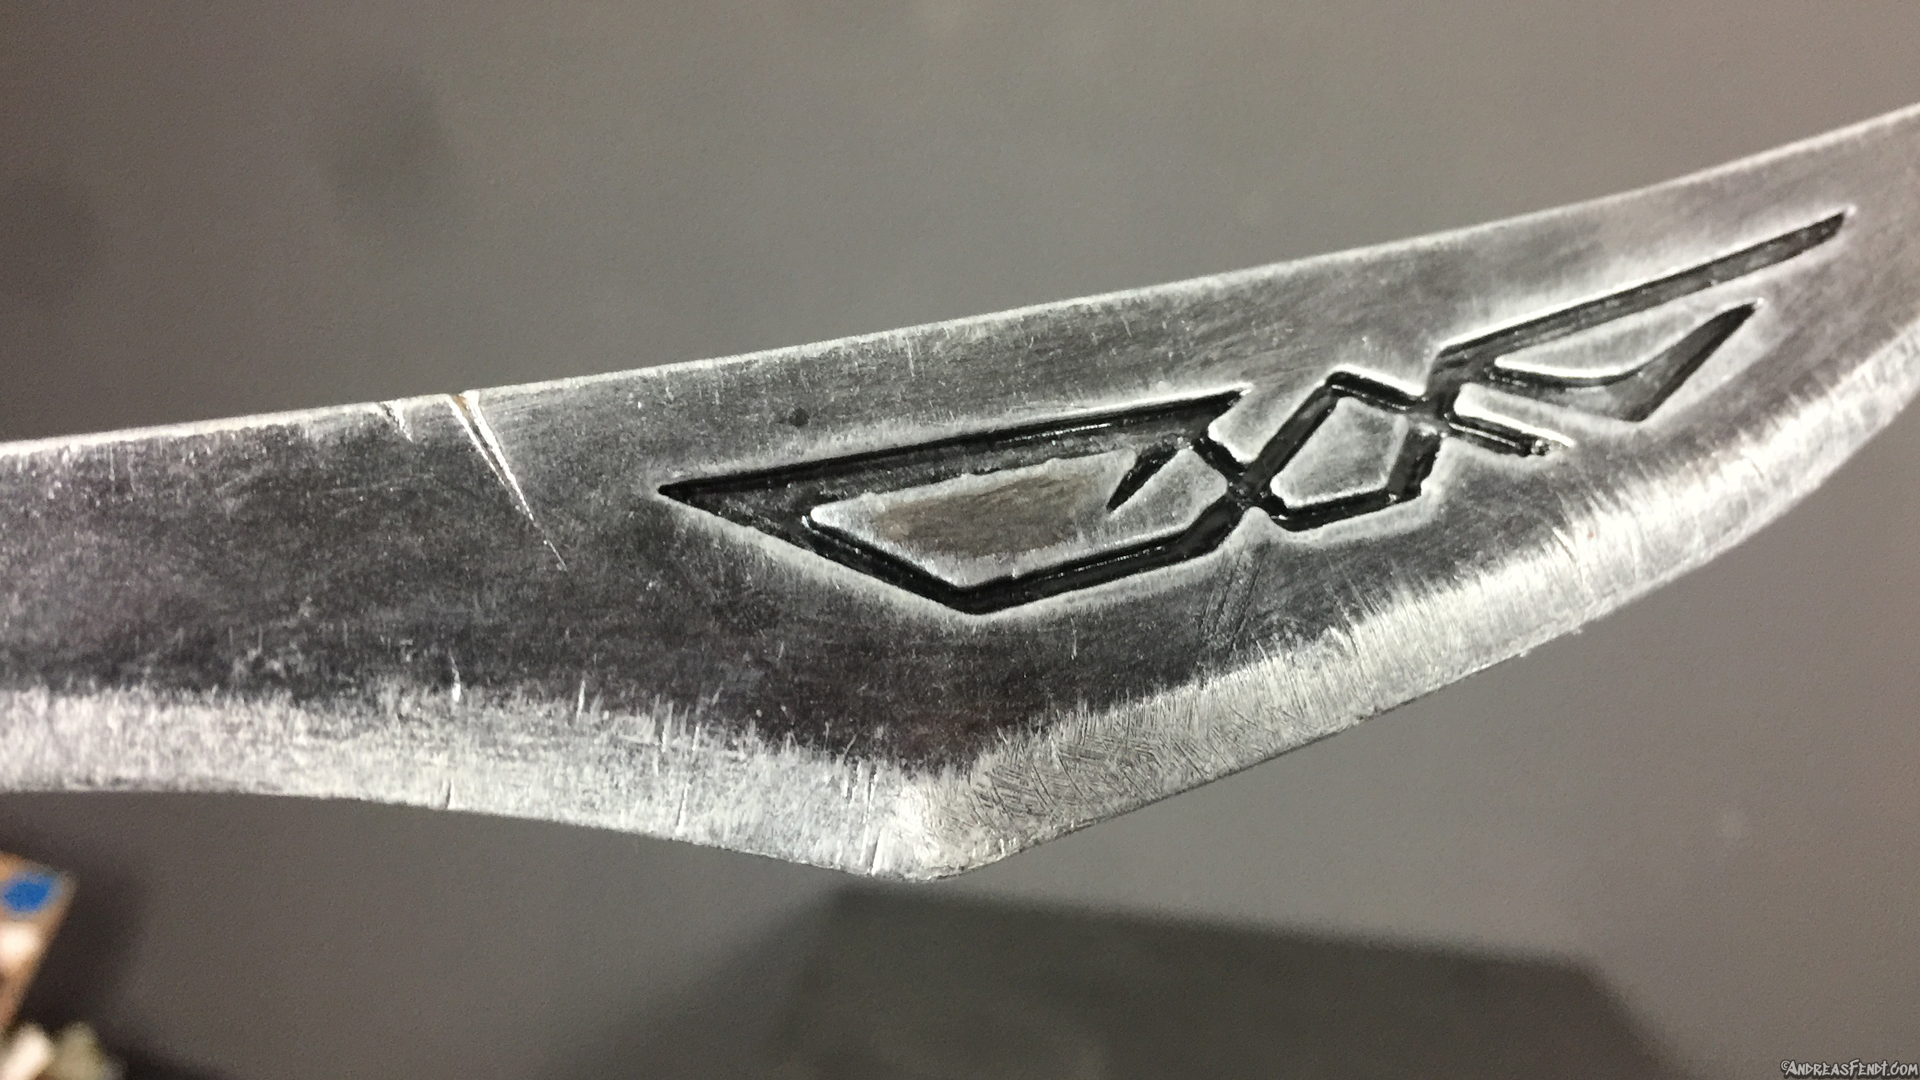 Skyrim nordic caved dagger painted 3D-Print model metal